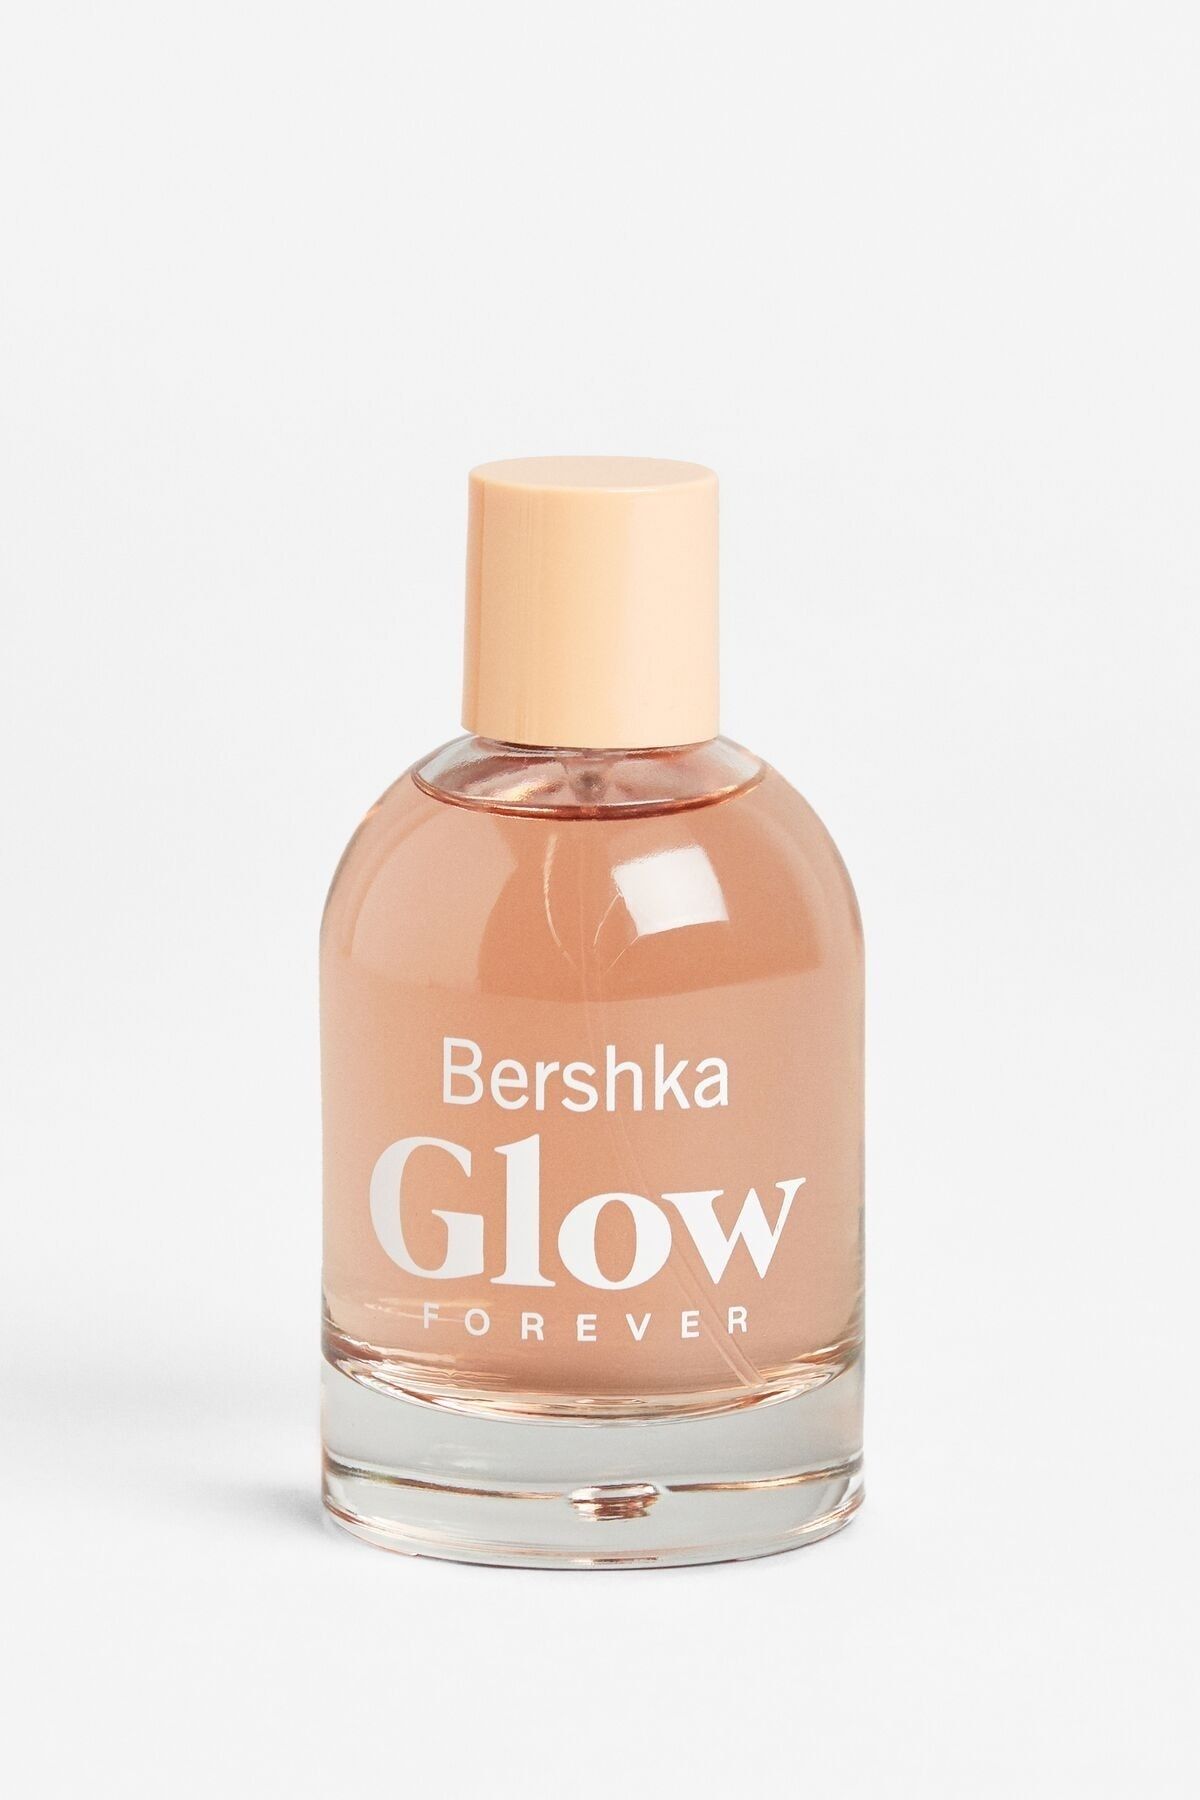 عطر زنانه گلو فوراور 100 میل  برشکا Bershka Glow Forever